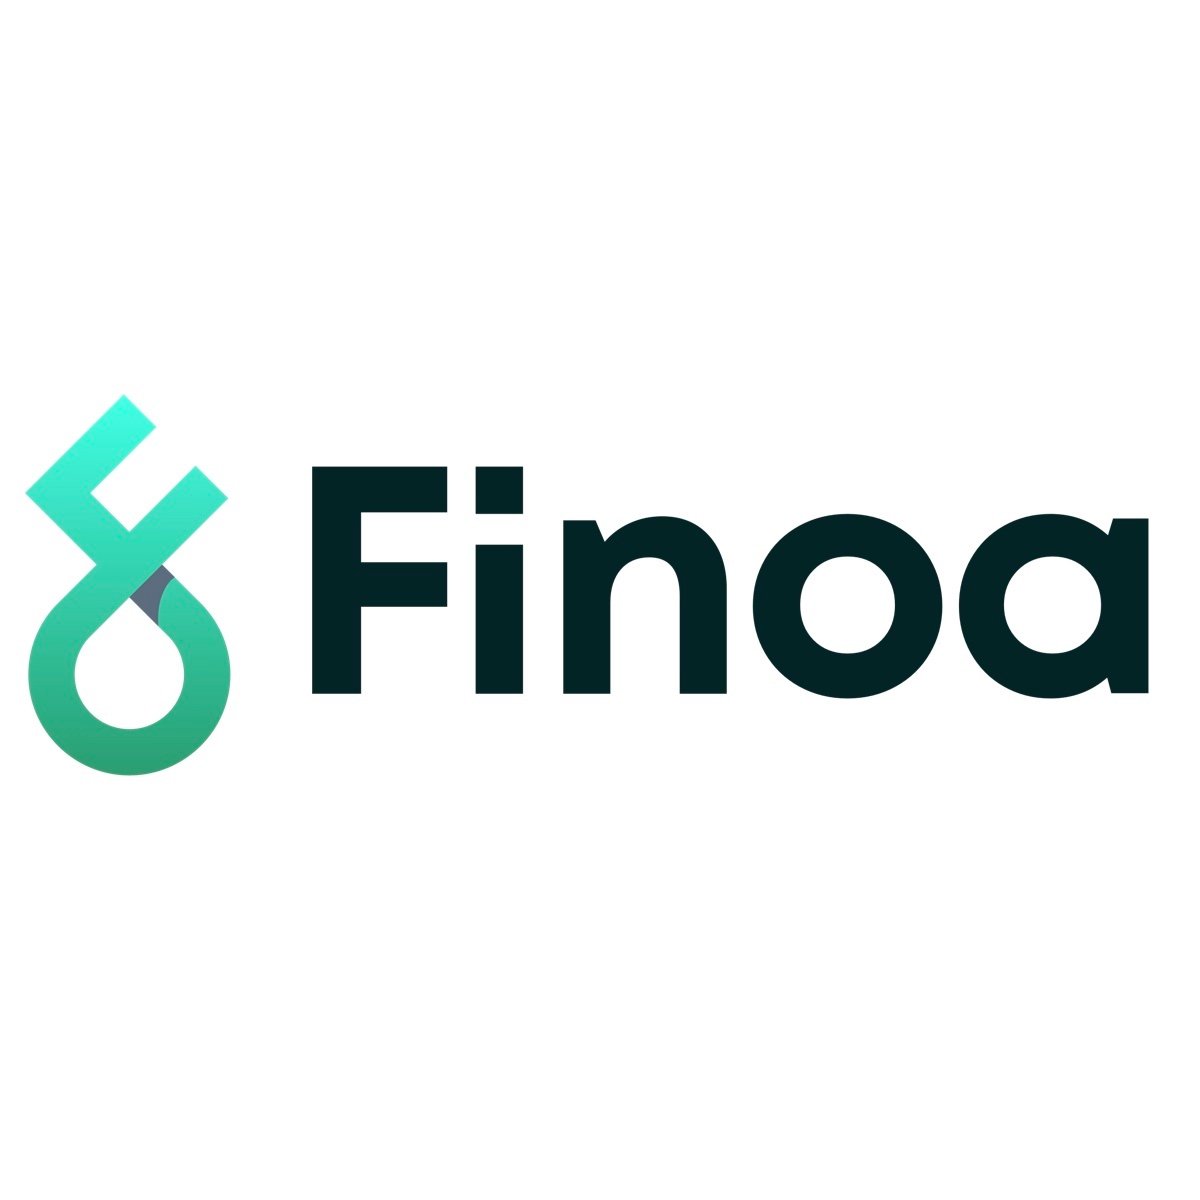 Fiona logo